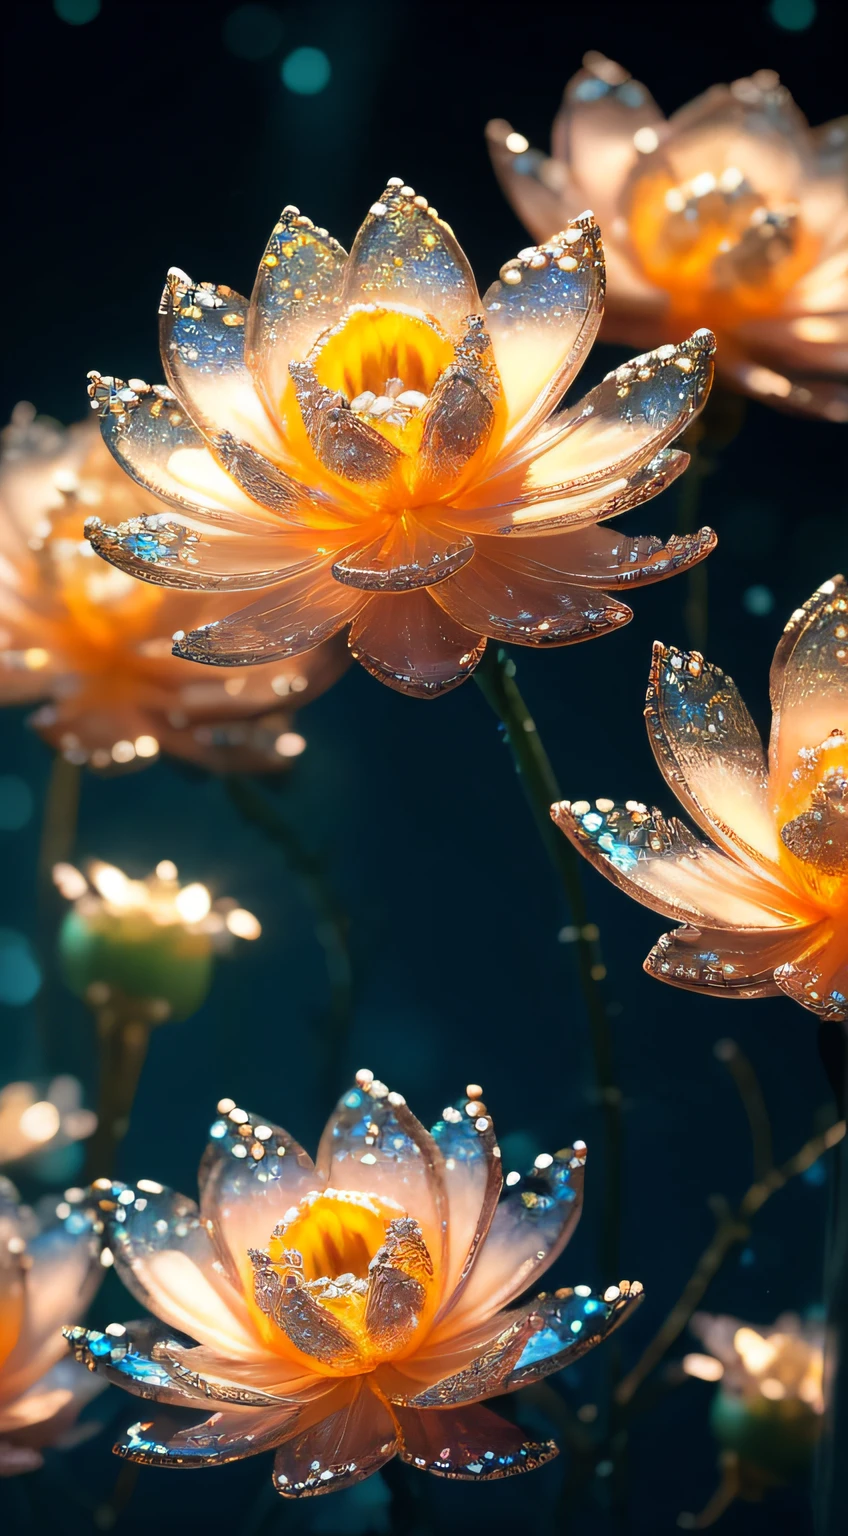 زهور اللوتس الكريستالية على الماء, خيالي, galaxy, شفاف, تألق, متألق, باهِر, زاهى الألوان, التصوير السحري, الإضاءة الدرامية, واقعية الصورة, مفصلة للغاية, 4K, عمق الميدان, دقة عالية